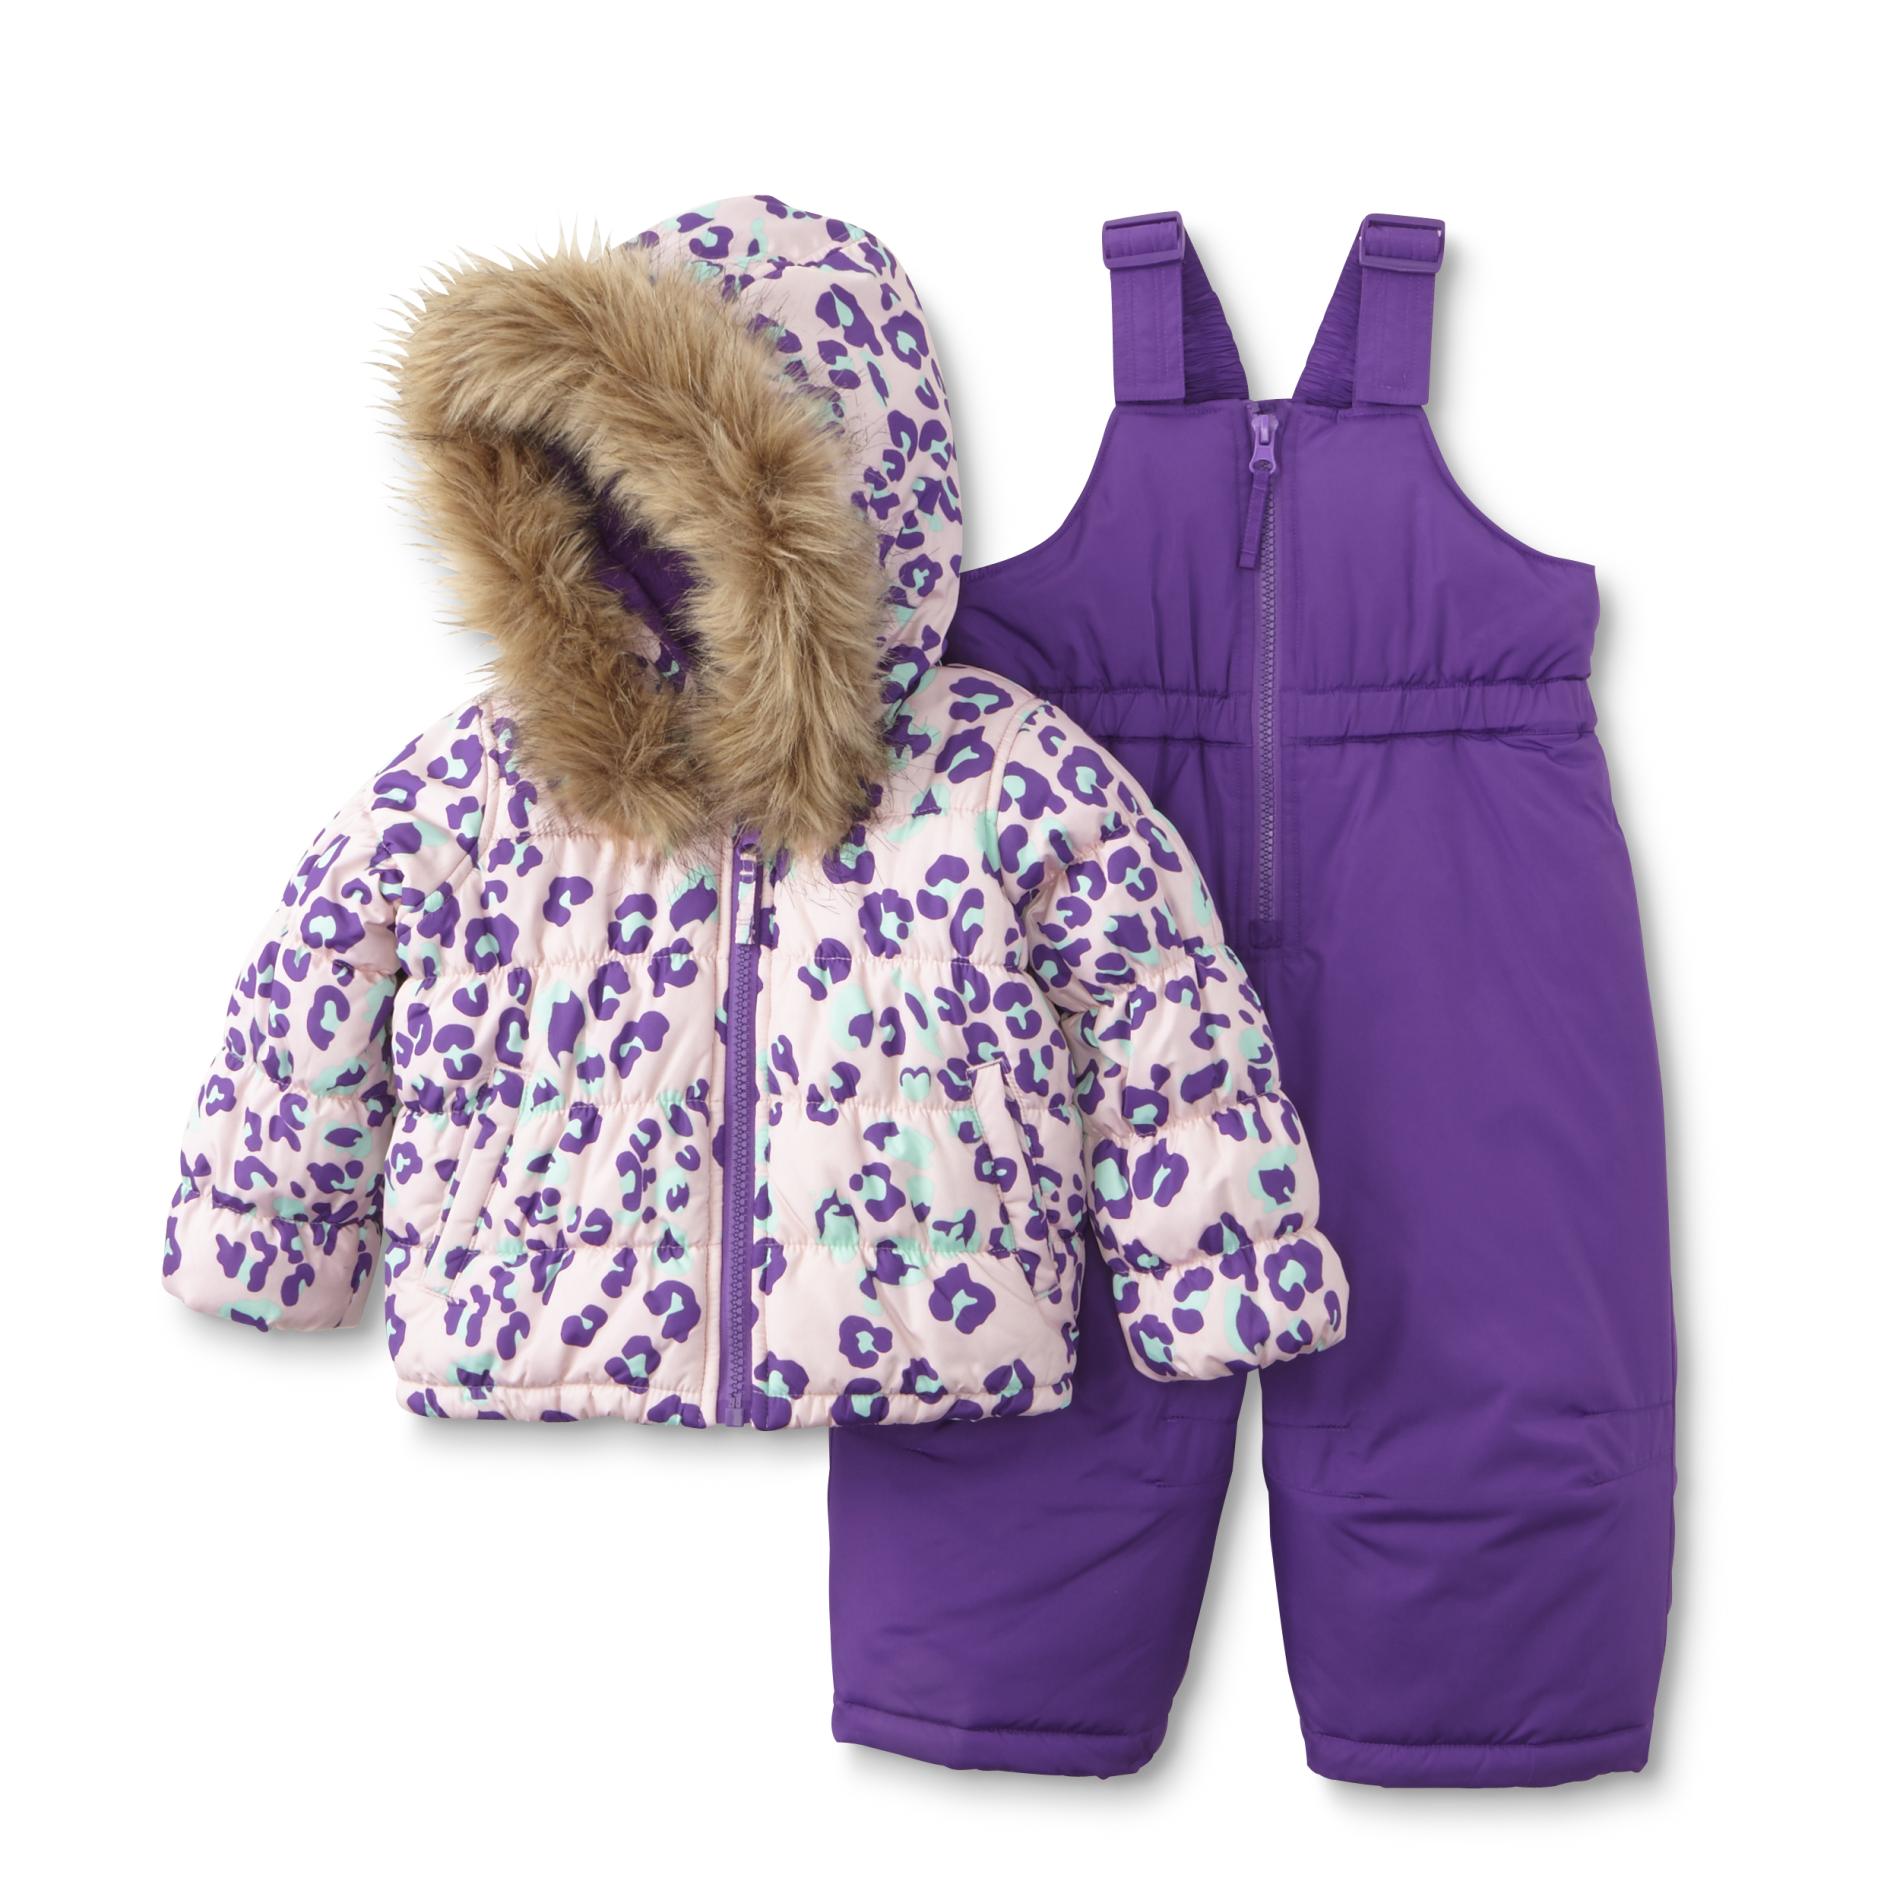 Toughskins Infant Girl's Snow Pants & Coat - Leopard Print